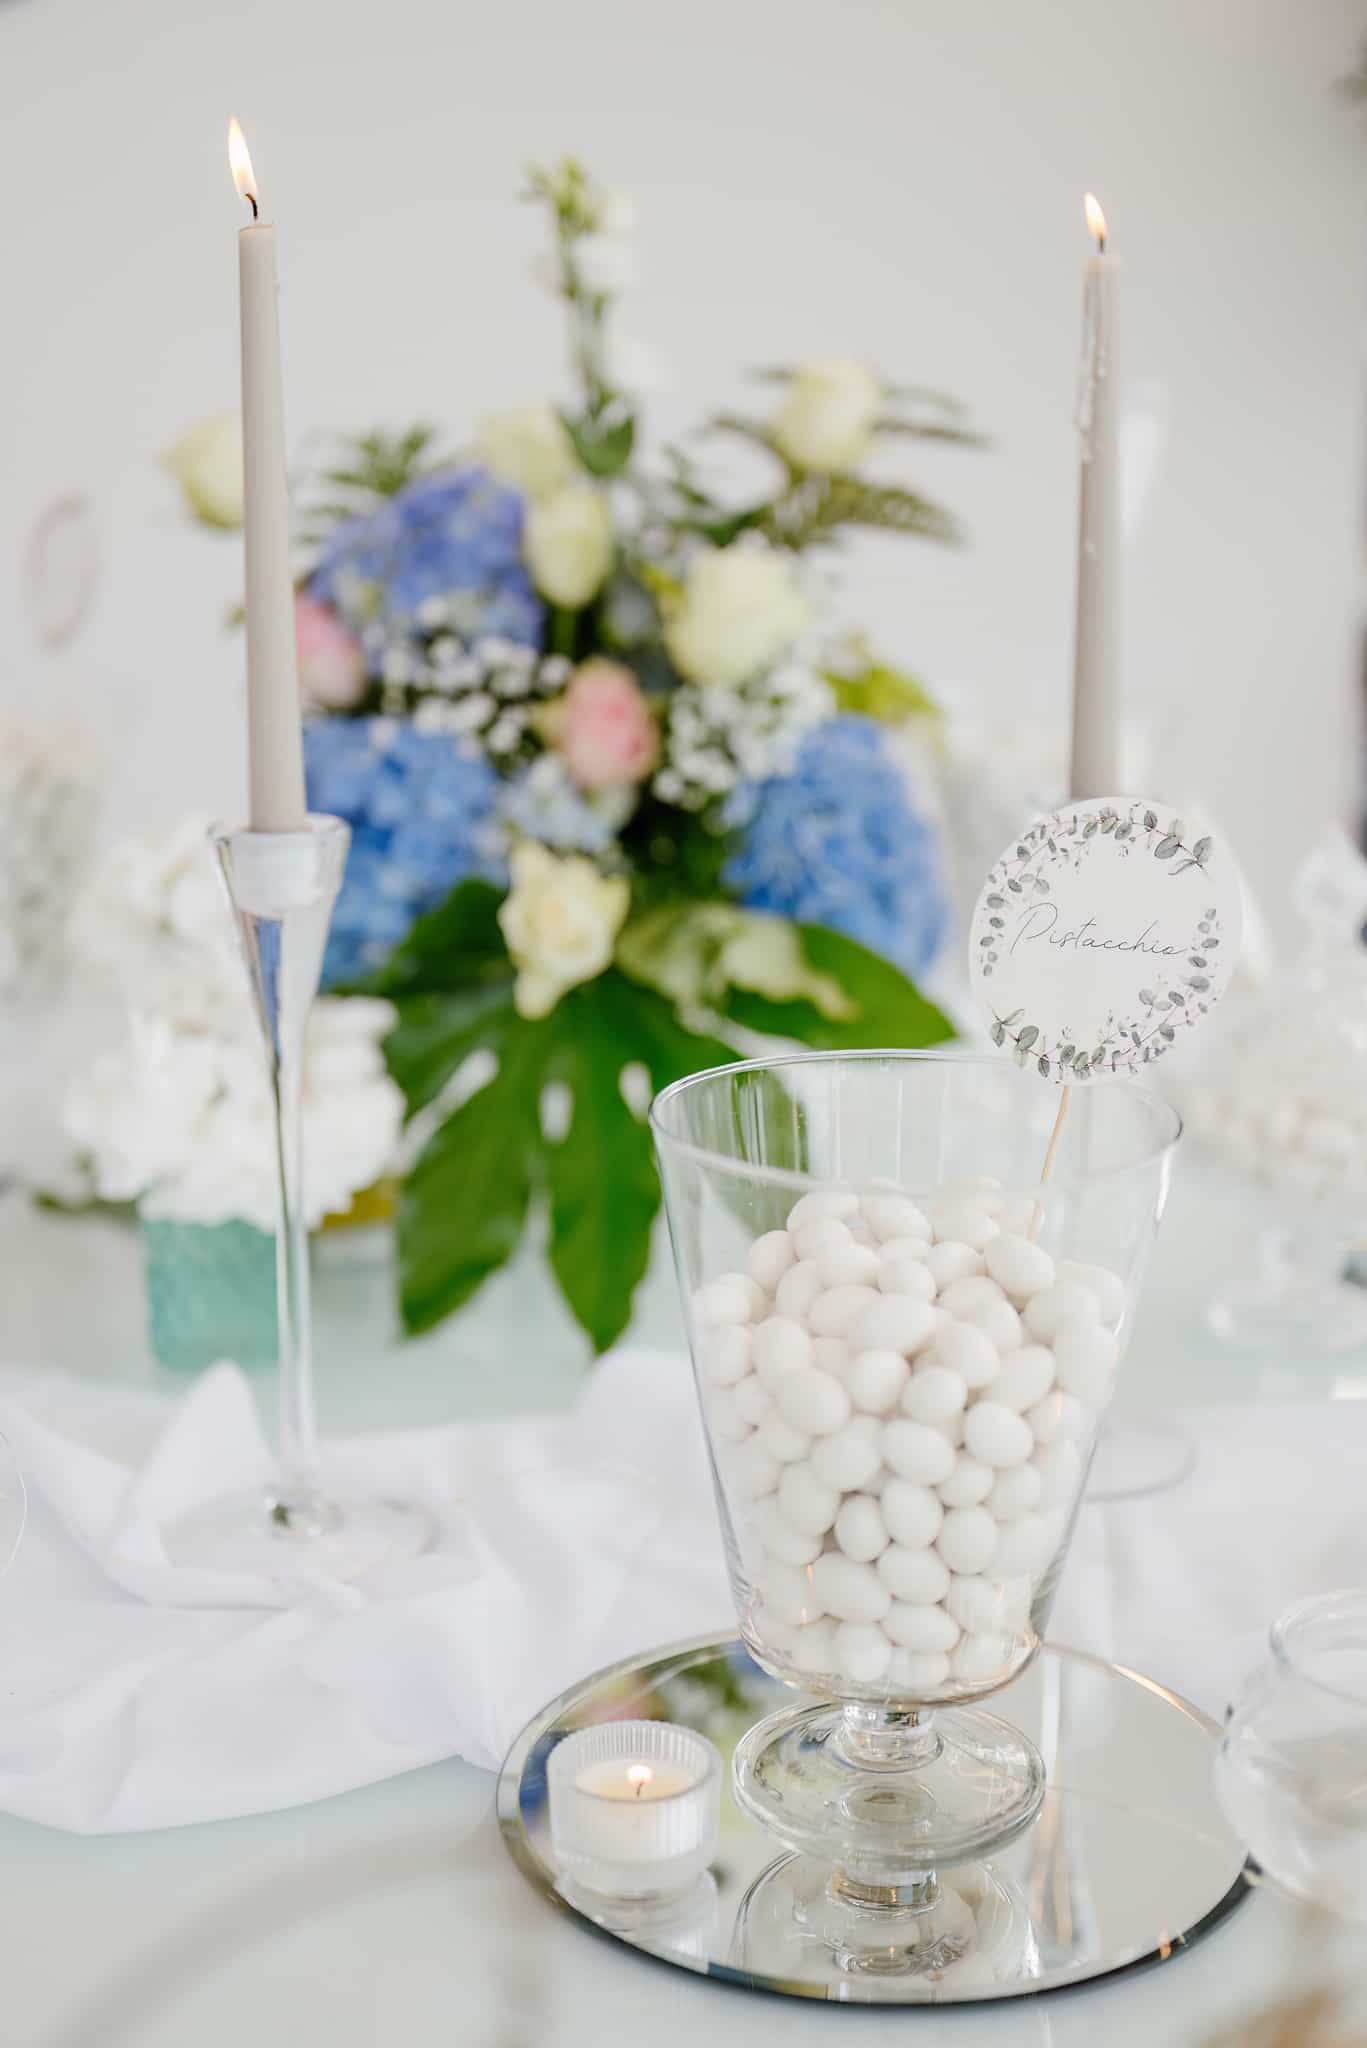 pagus-montepagano-fotografo-matrimonio-sweet-table-confettata-confetti-fiori